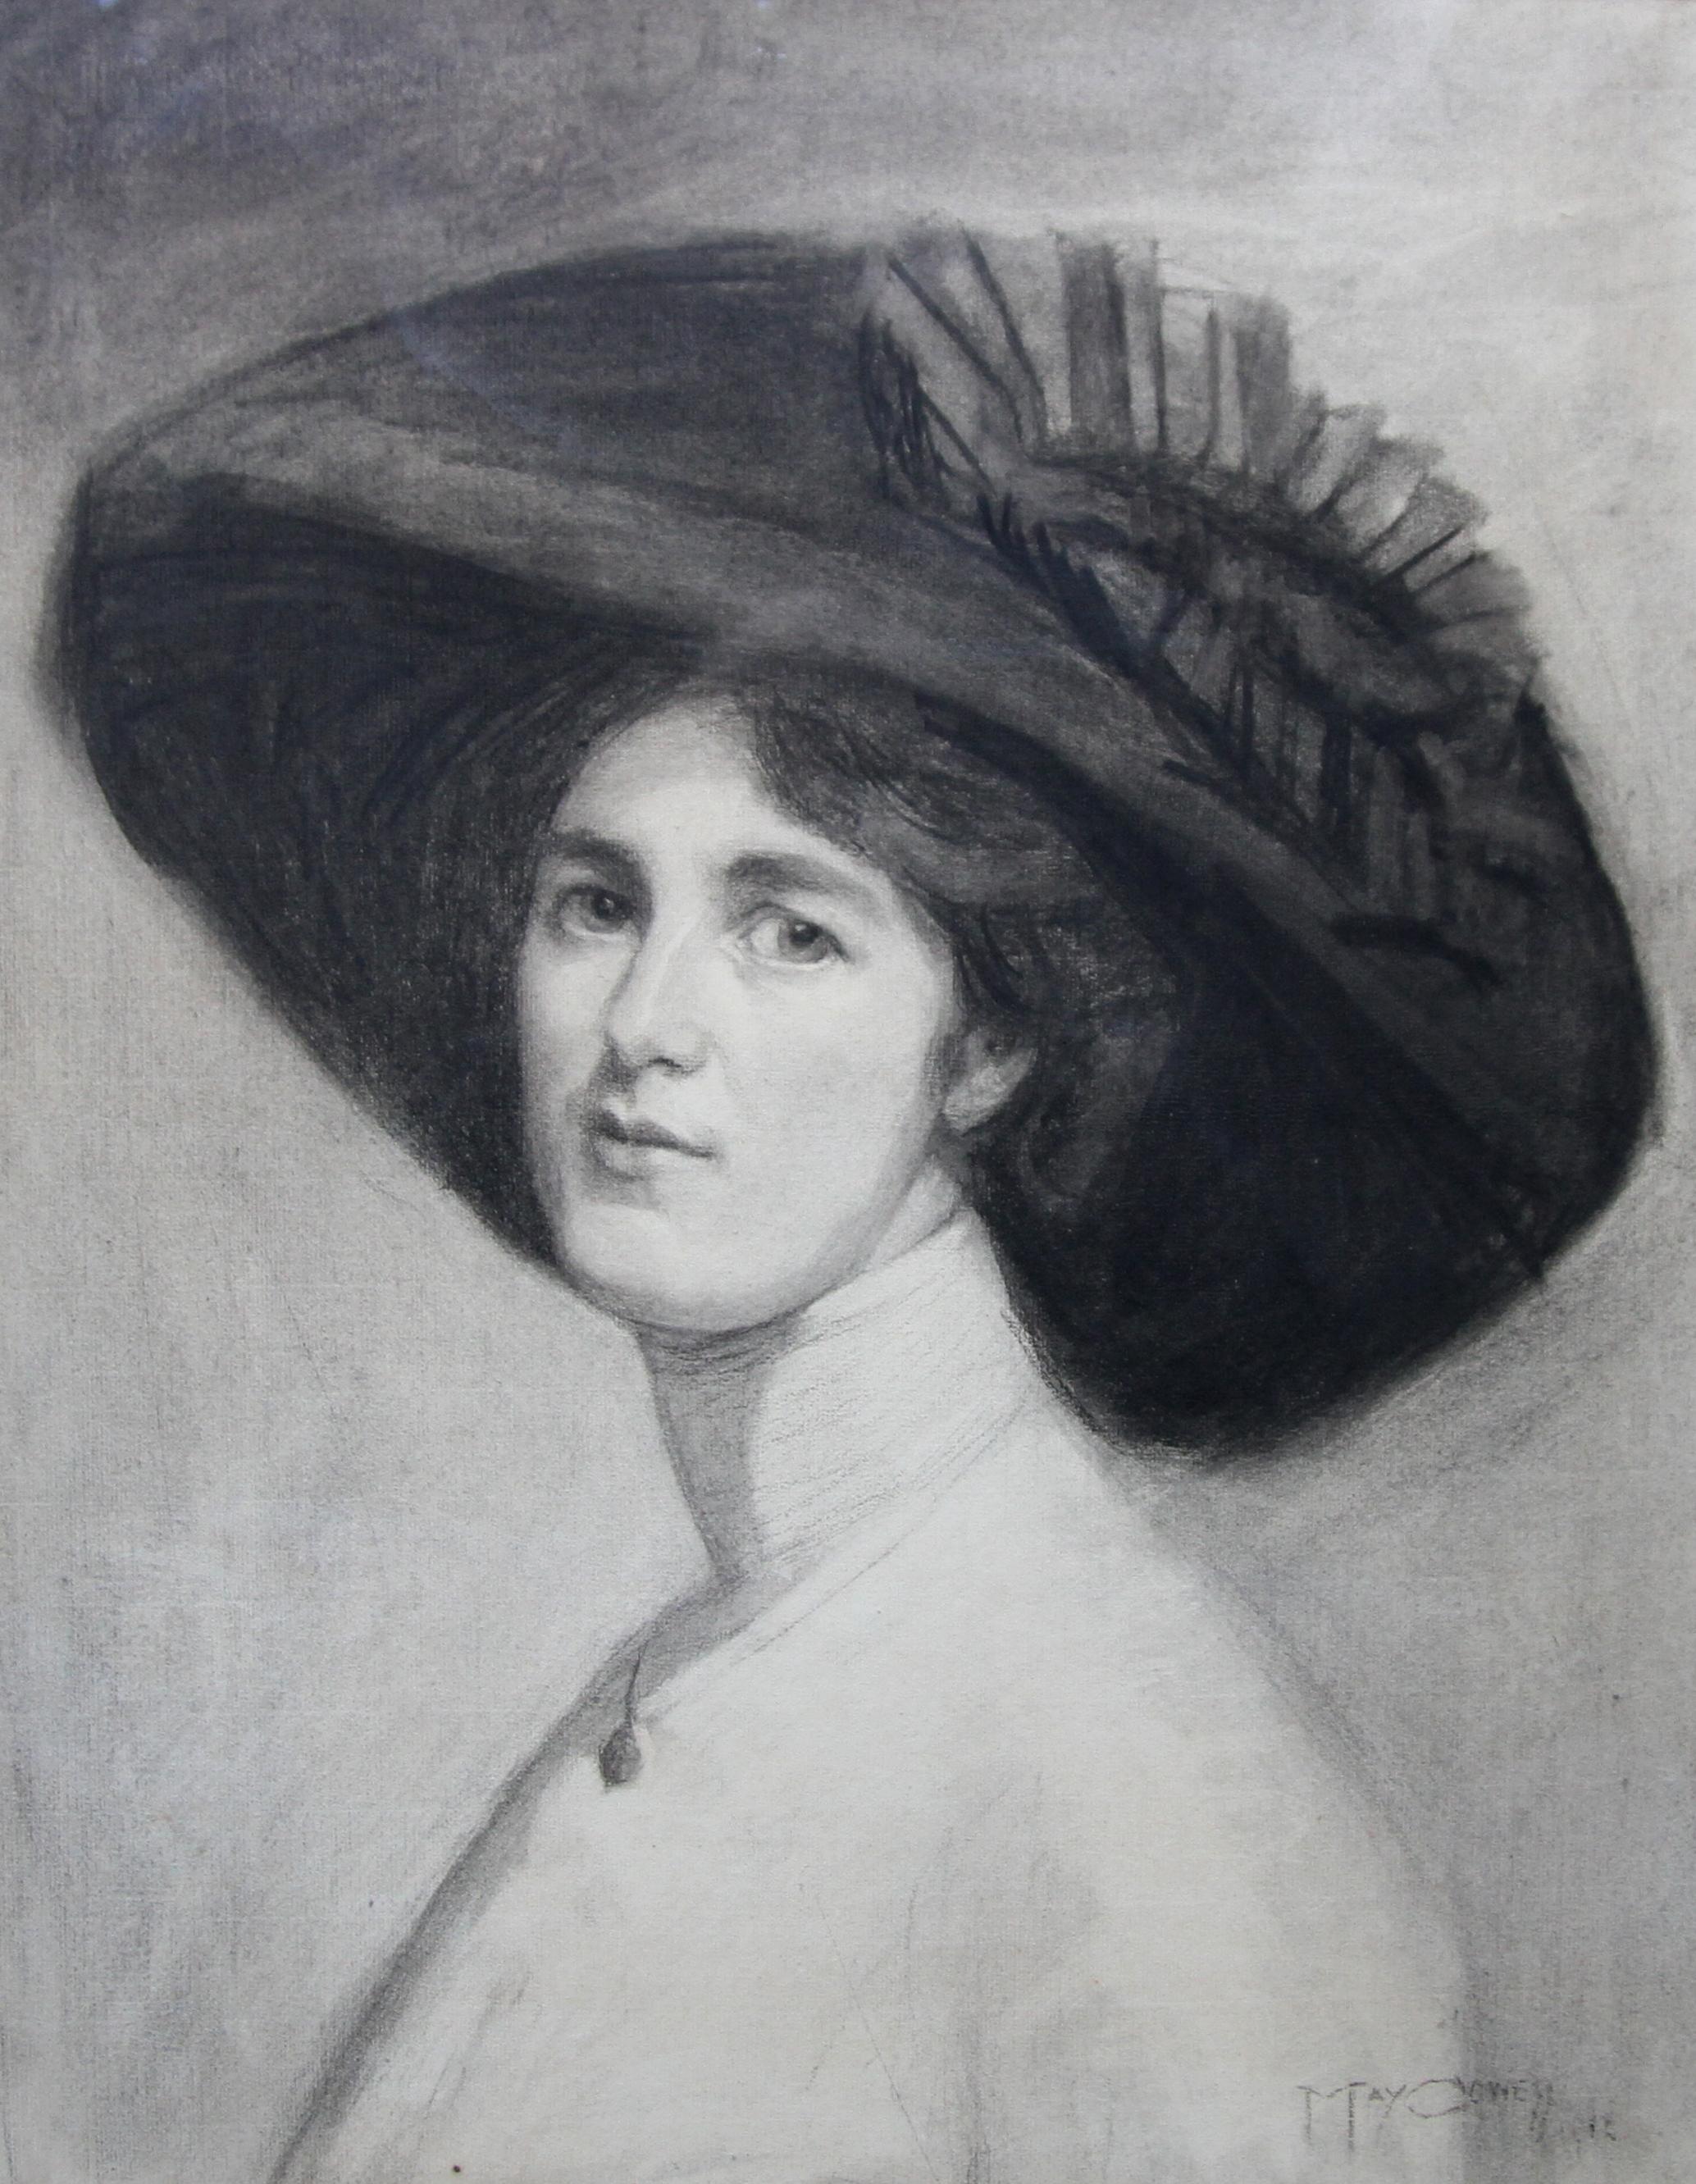 Porträt von Decima Moore – Schauspielerin und Suffragette, edwardianische Zeichnung einer Künstlerin – Art von Maria Cowell nee Sayer